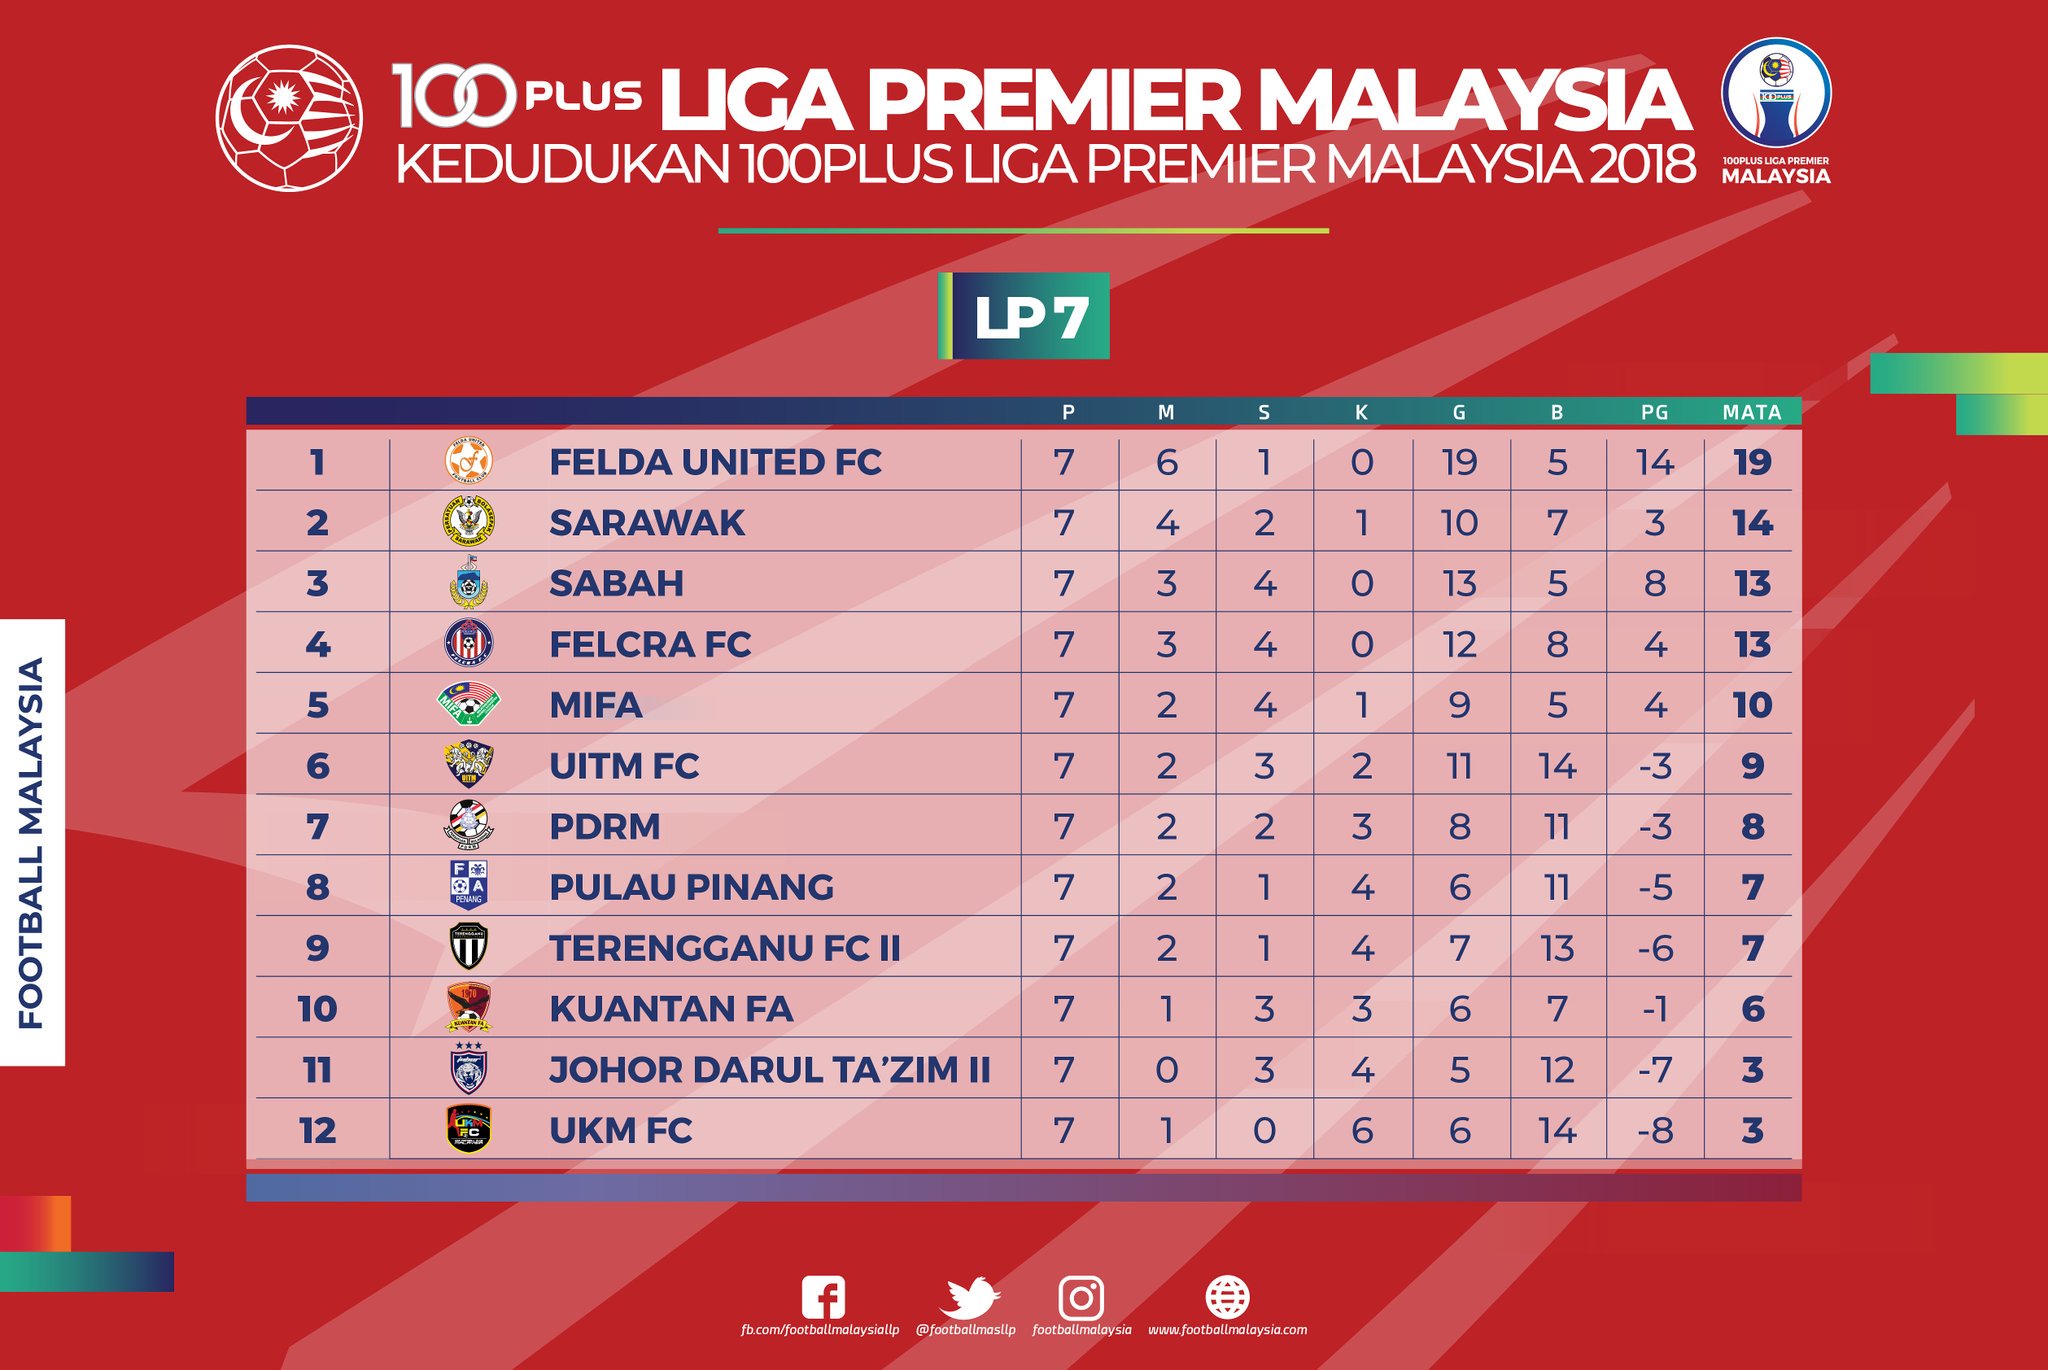 Kedudukan liga premier malaysia